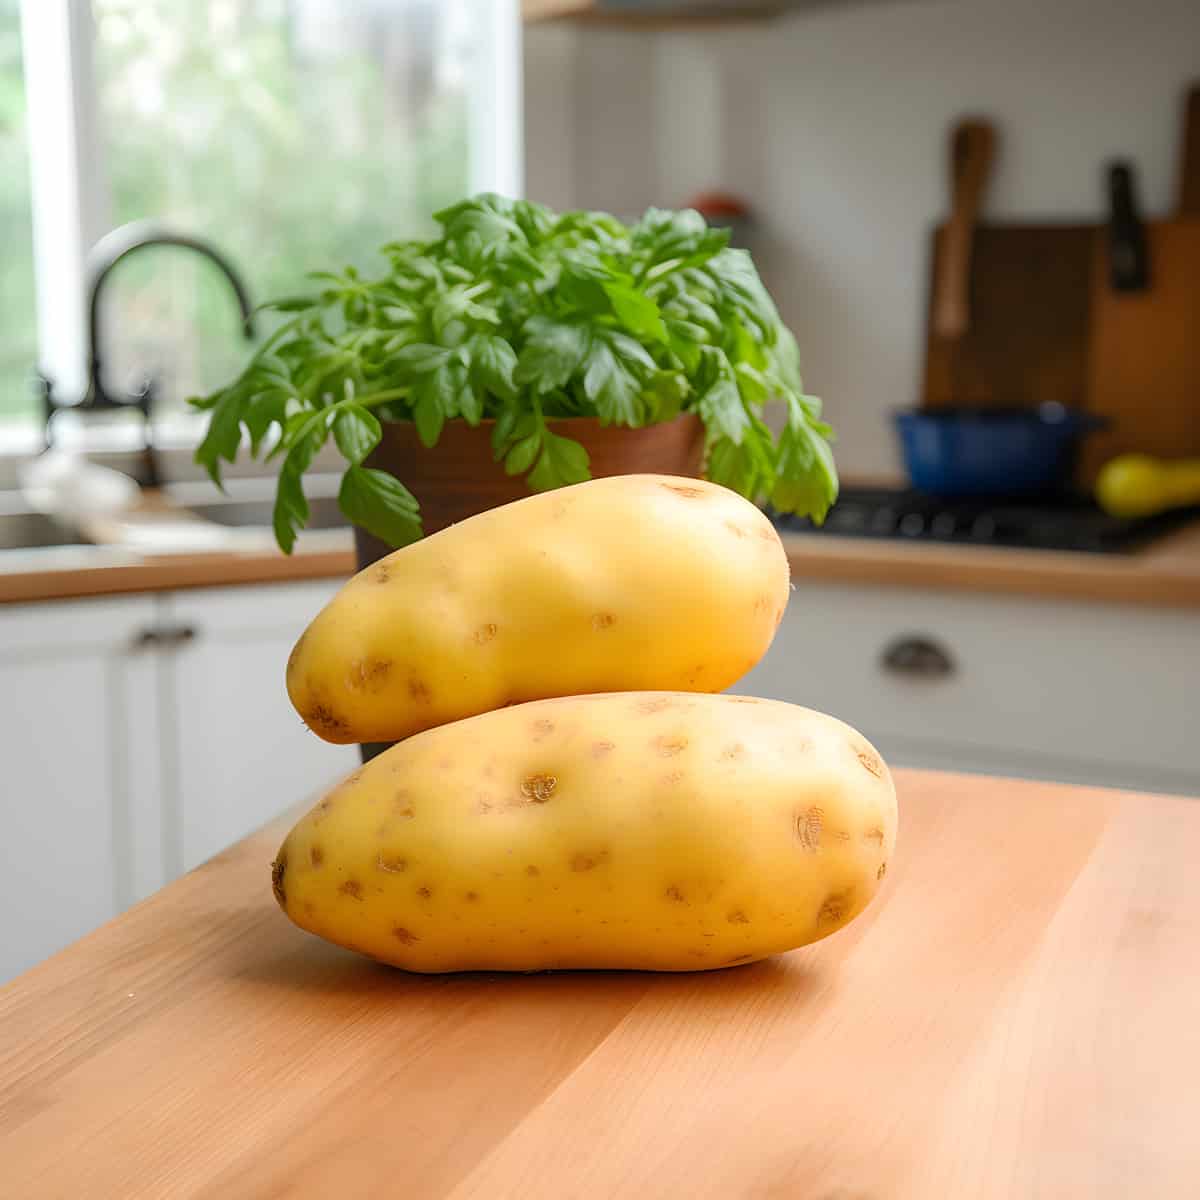 Spunta Potatoes on a kitchen counter